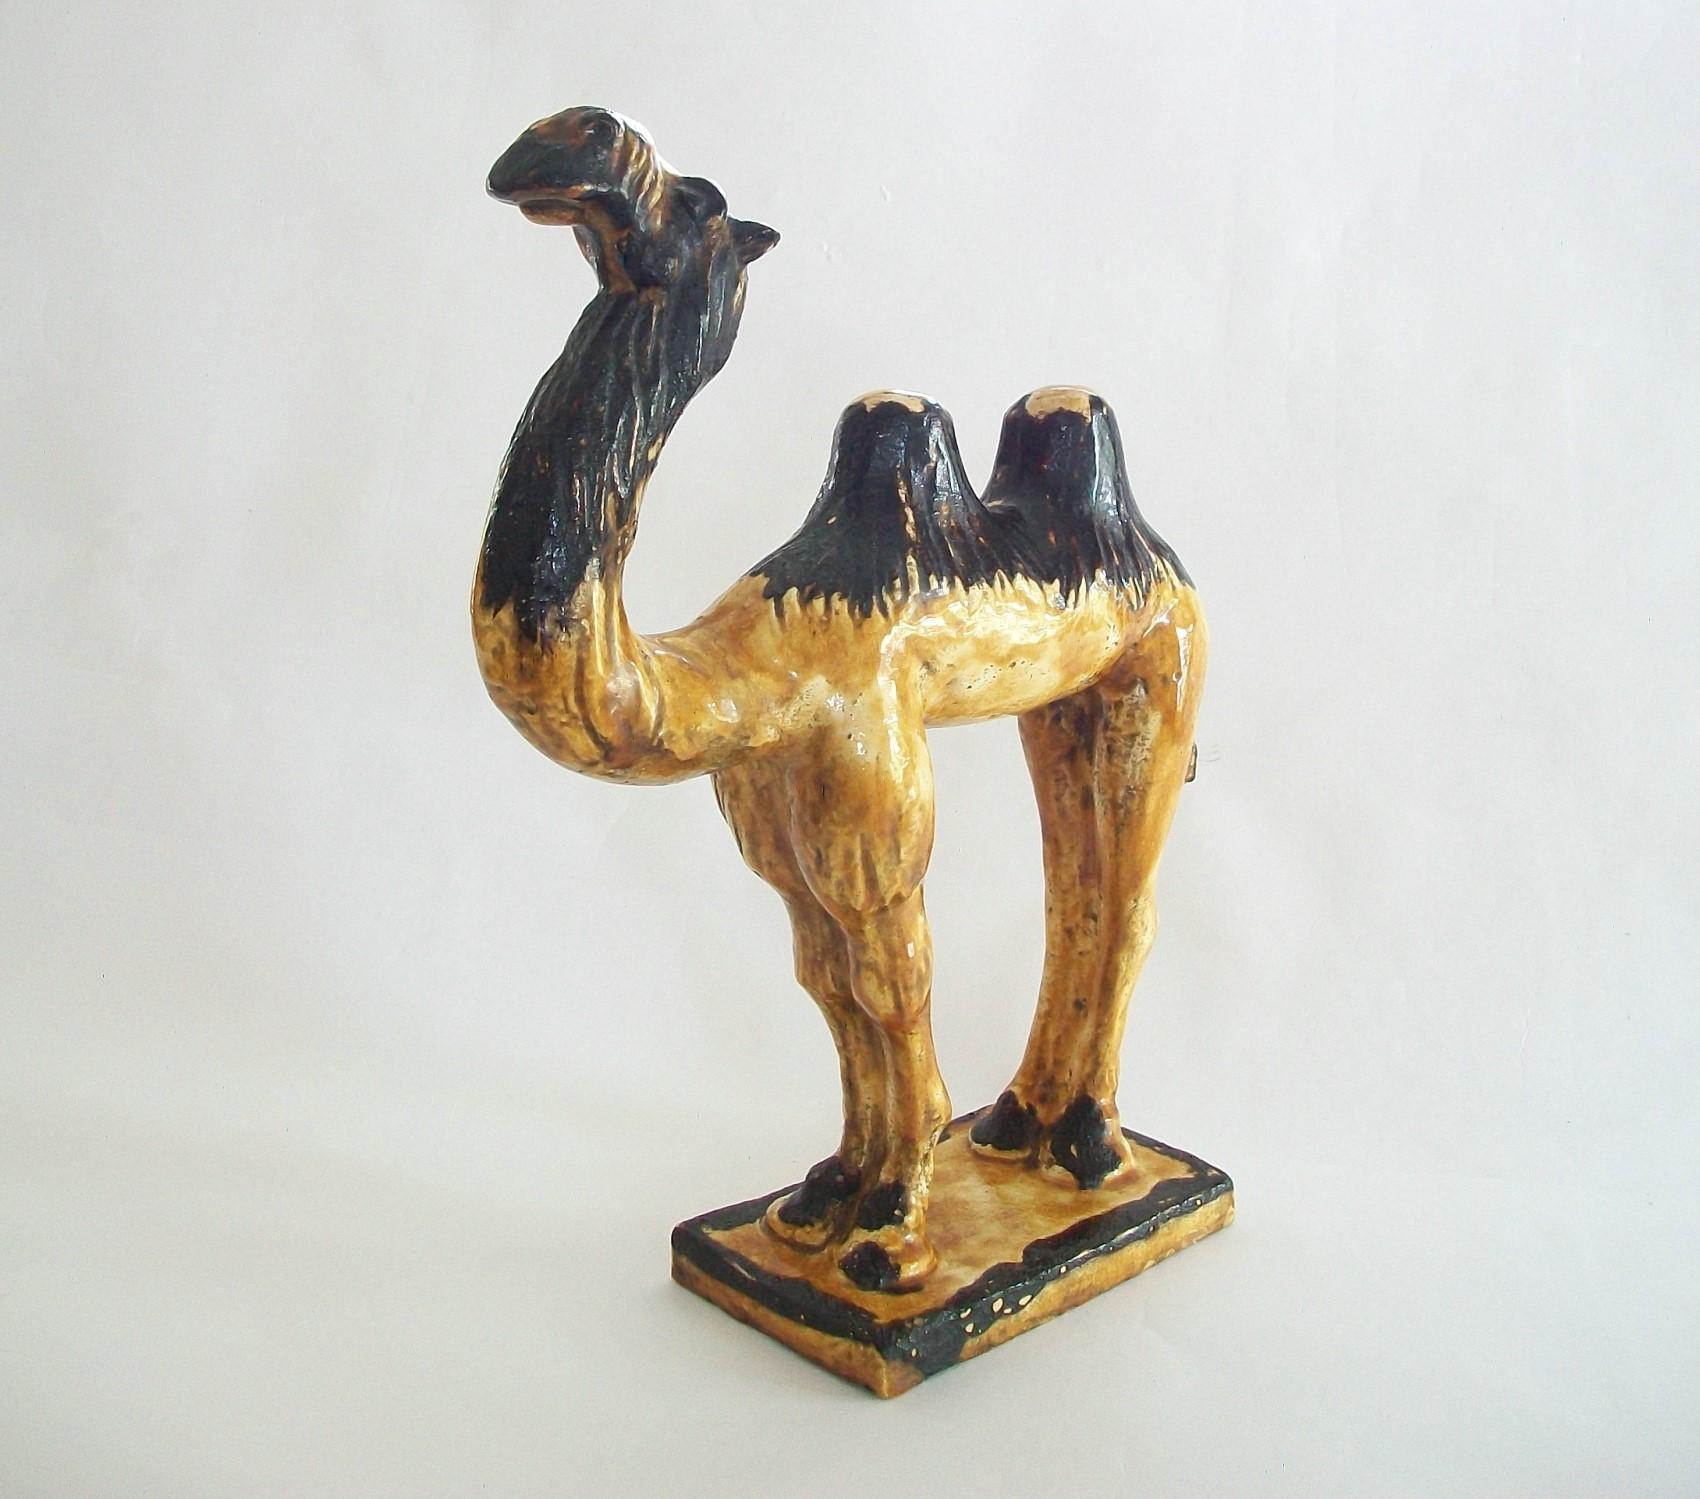 Antique figurine tombale en forme de chameau de Bactriane de style Tang - glaçure ambrée avec des reflets bruns - détails stylisés en fourrure sculptés sur la tête, les pattes et les bosses - non signée - Chine - ancienne étiquette de collection